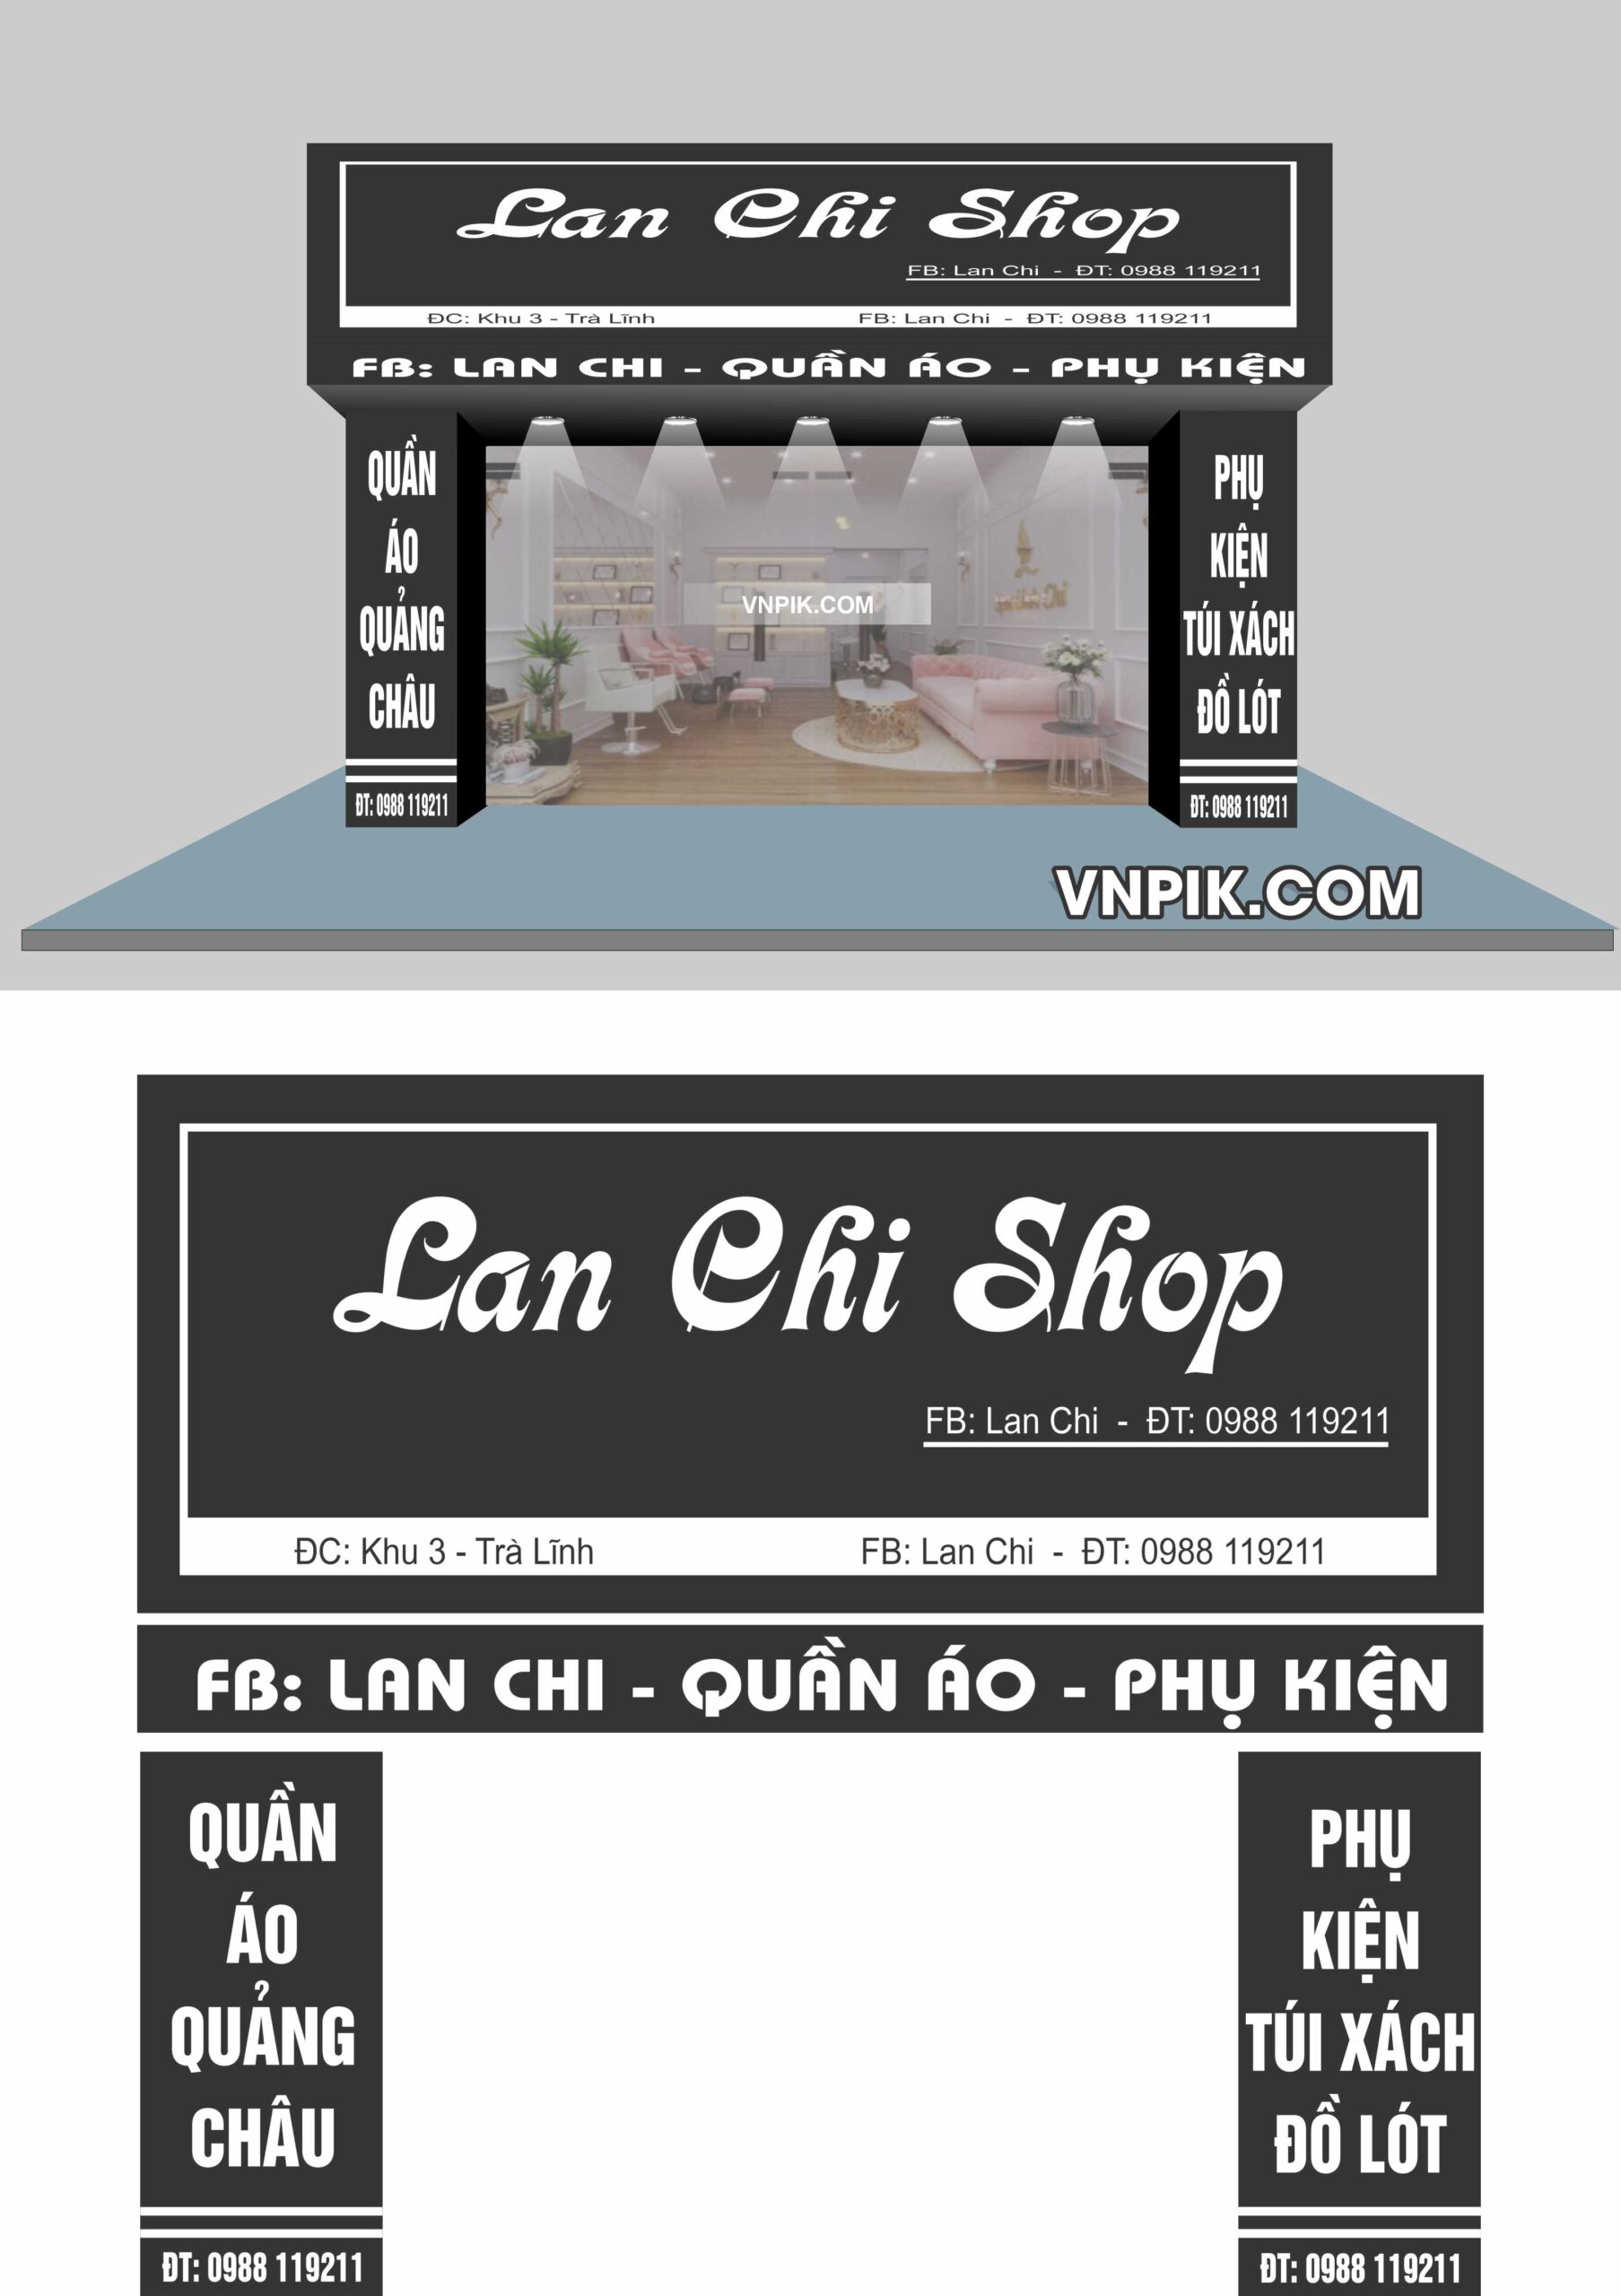 Mẫu biển shop quần áo Lan Chi 2